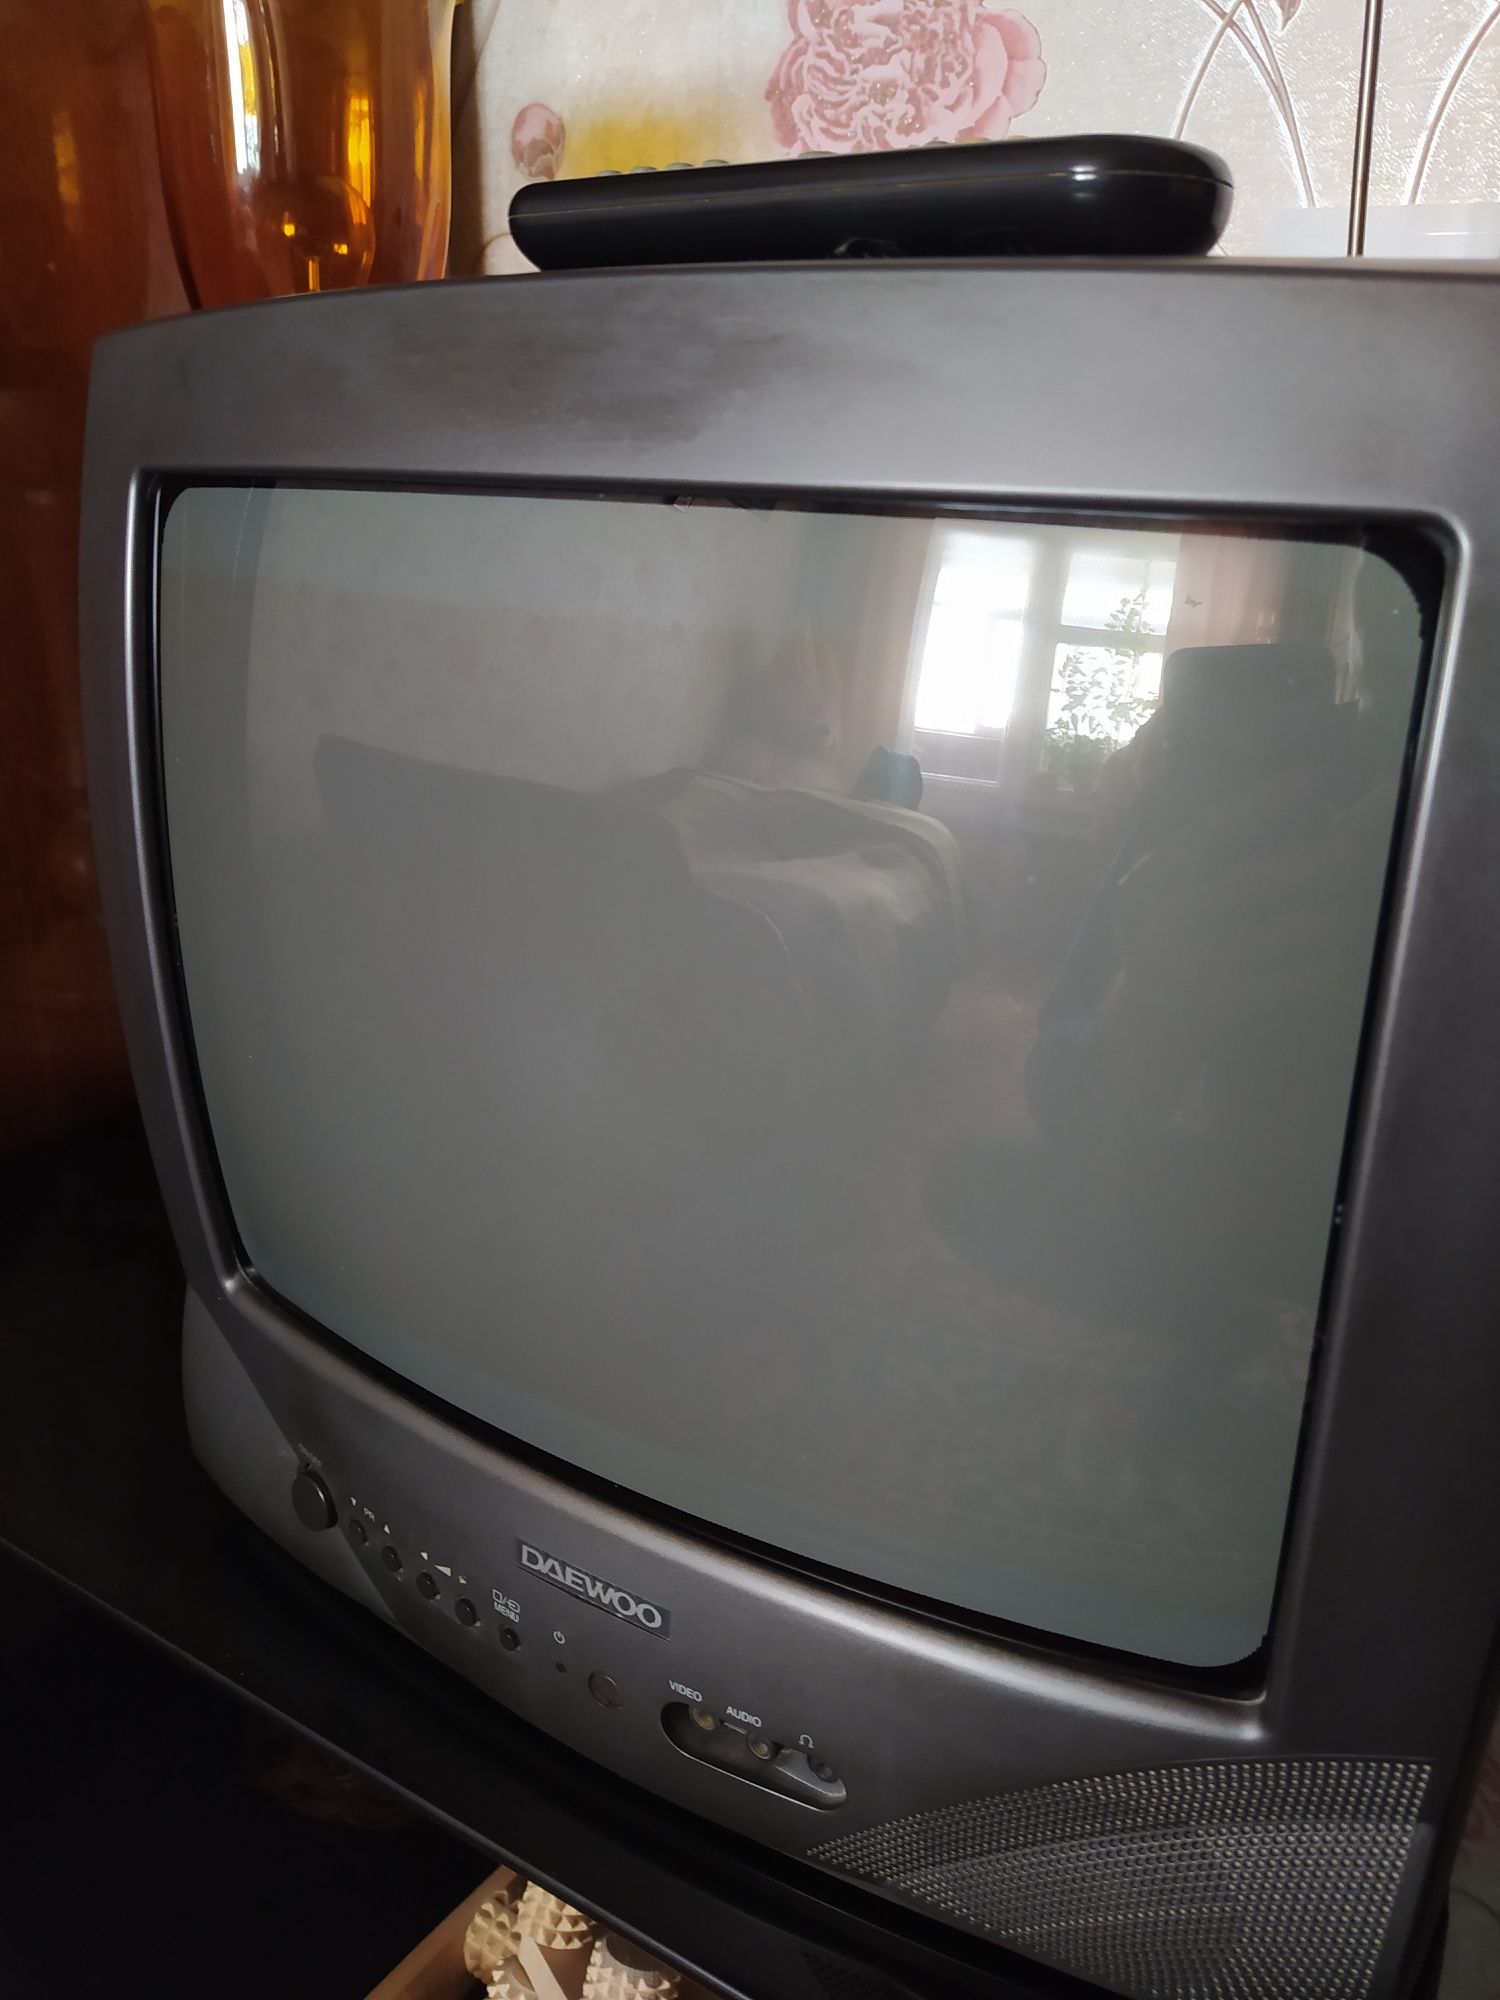 Телевизор Daewoo цветной.